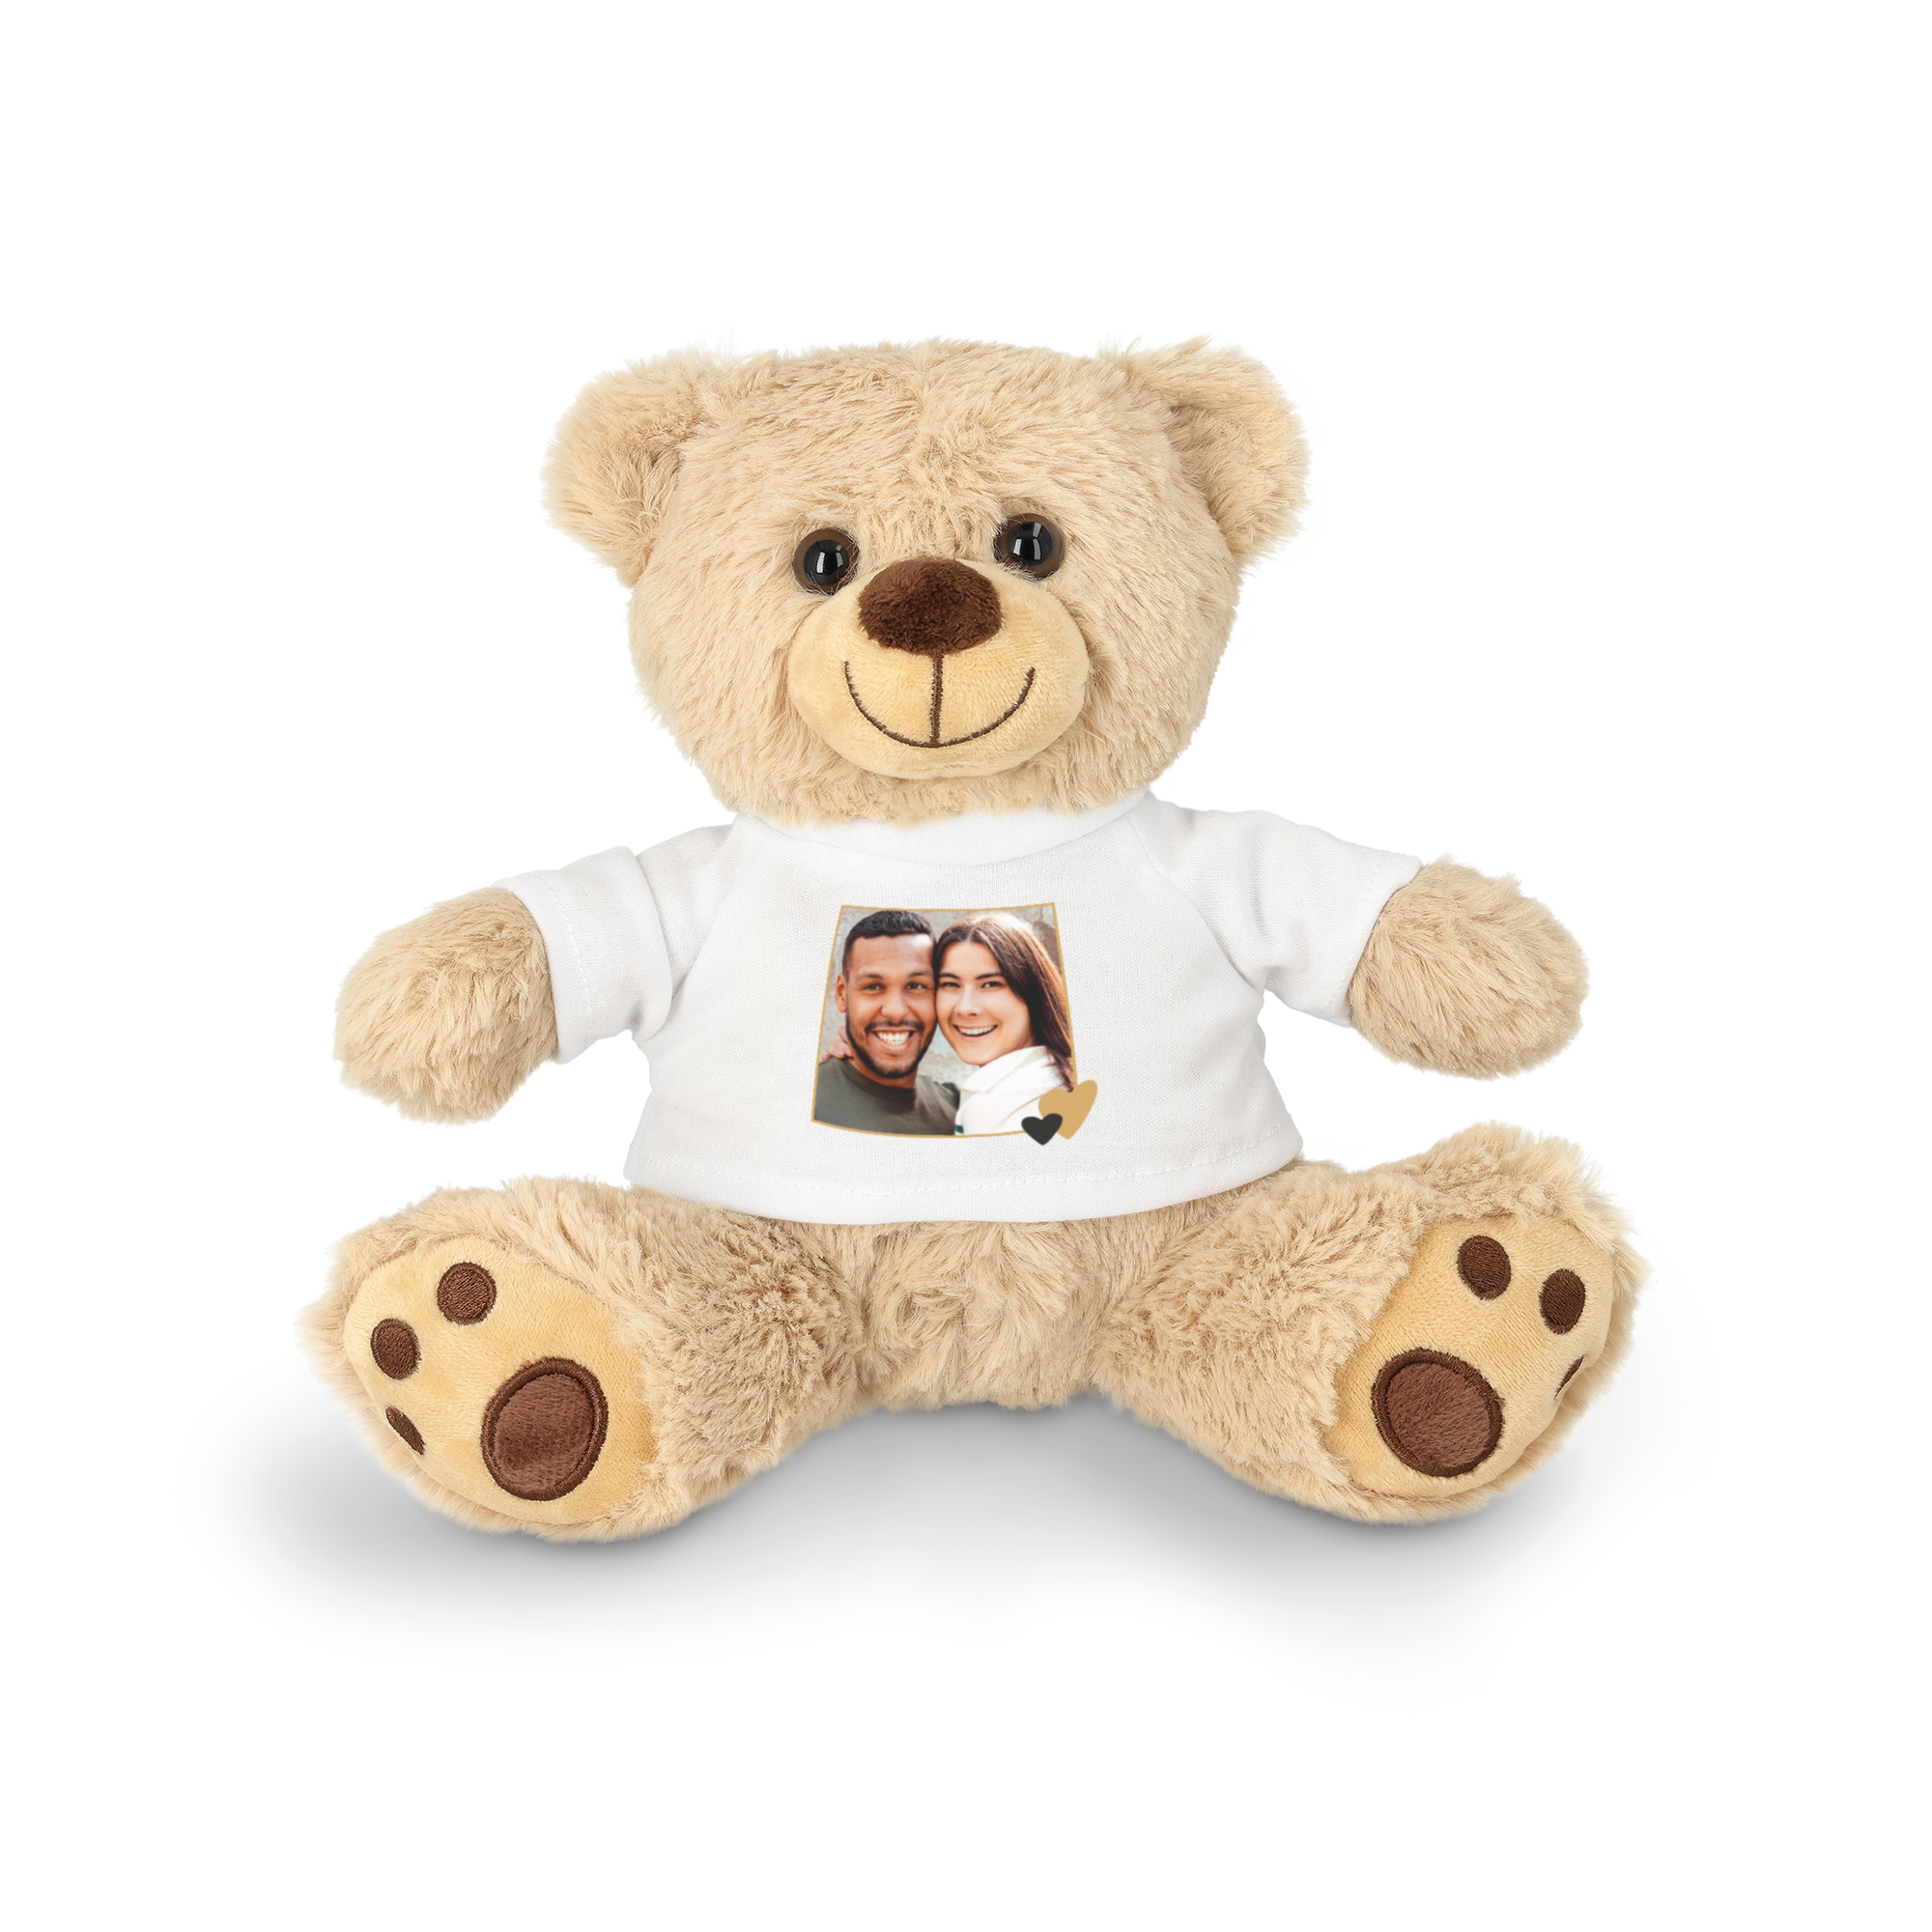 Personalised cuddly toy - Teddy bear - 20 cm